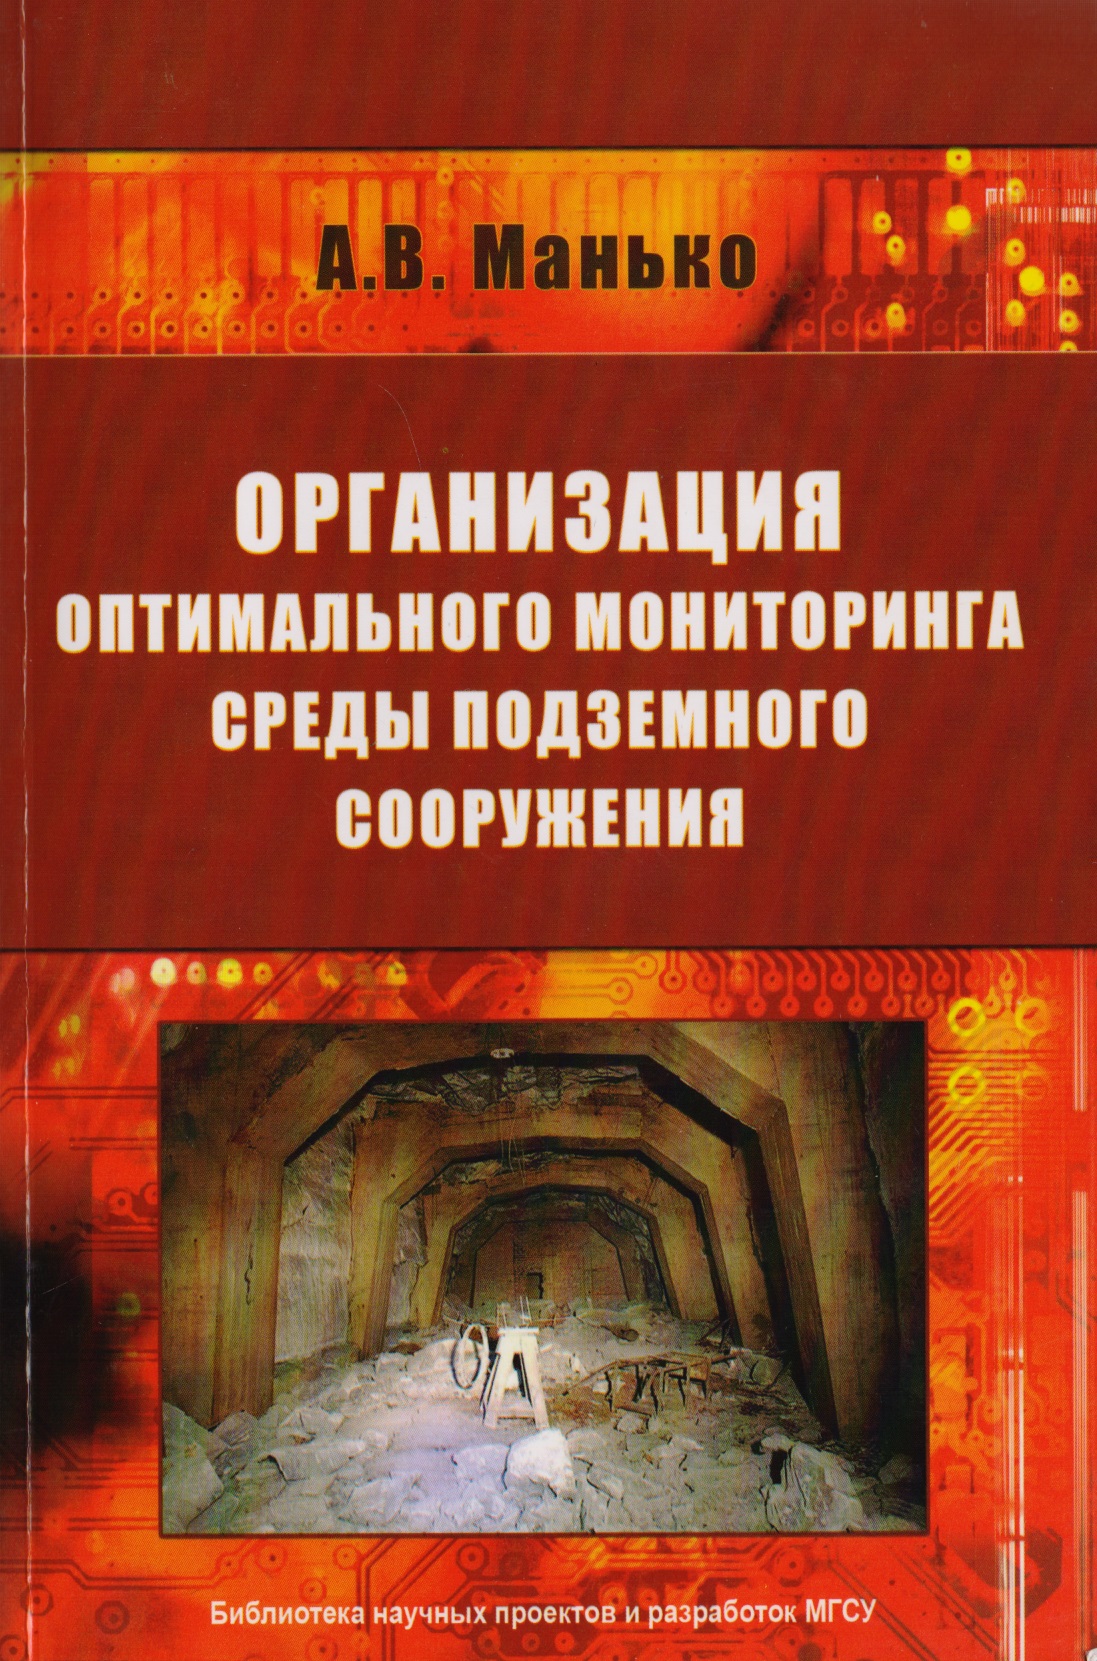 Манько Артур Владимирович Организация оптимального мониторинга среды подземного сооружения